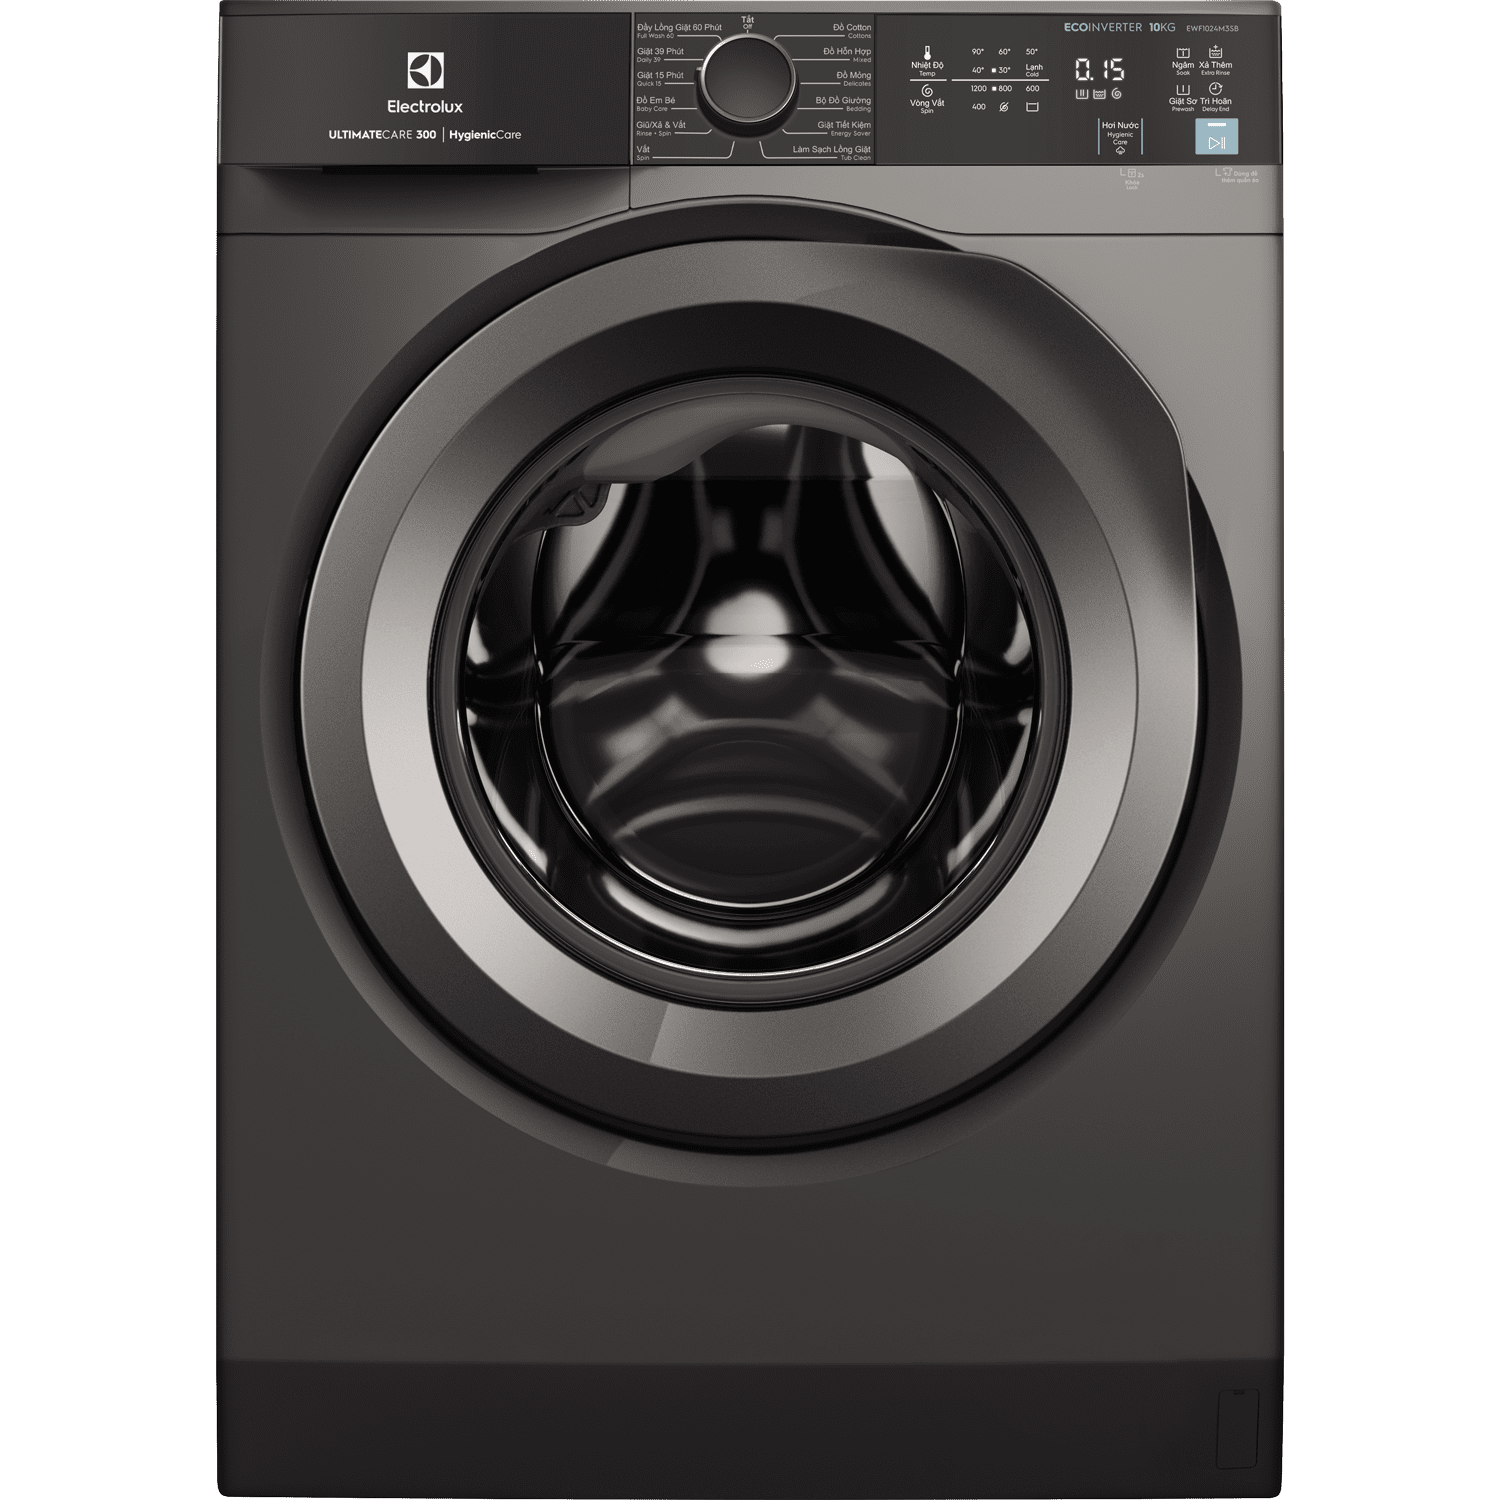 Những tiêu chí bạn nên lựa chọn mua máy giặt Electrolux cho gia đình